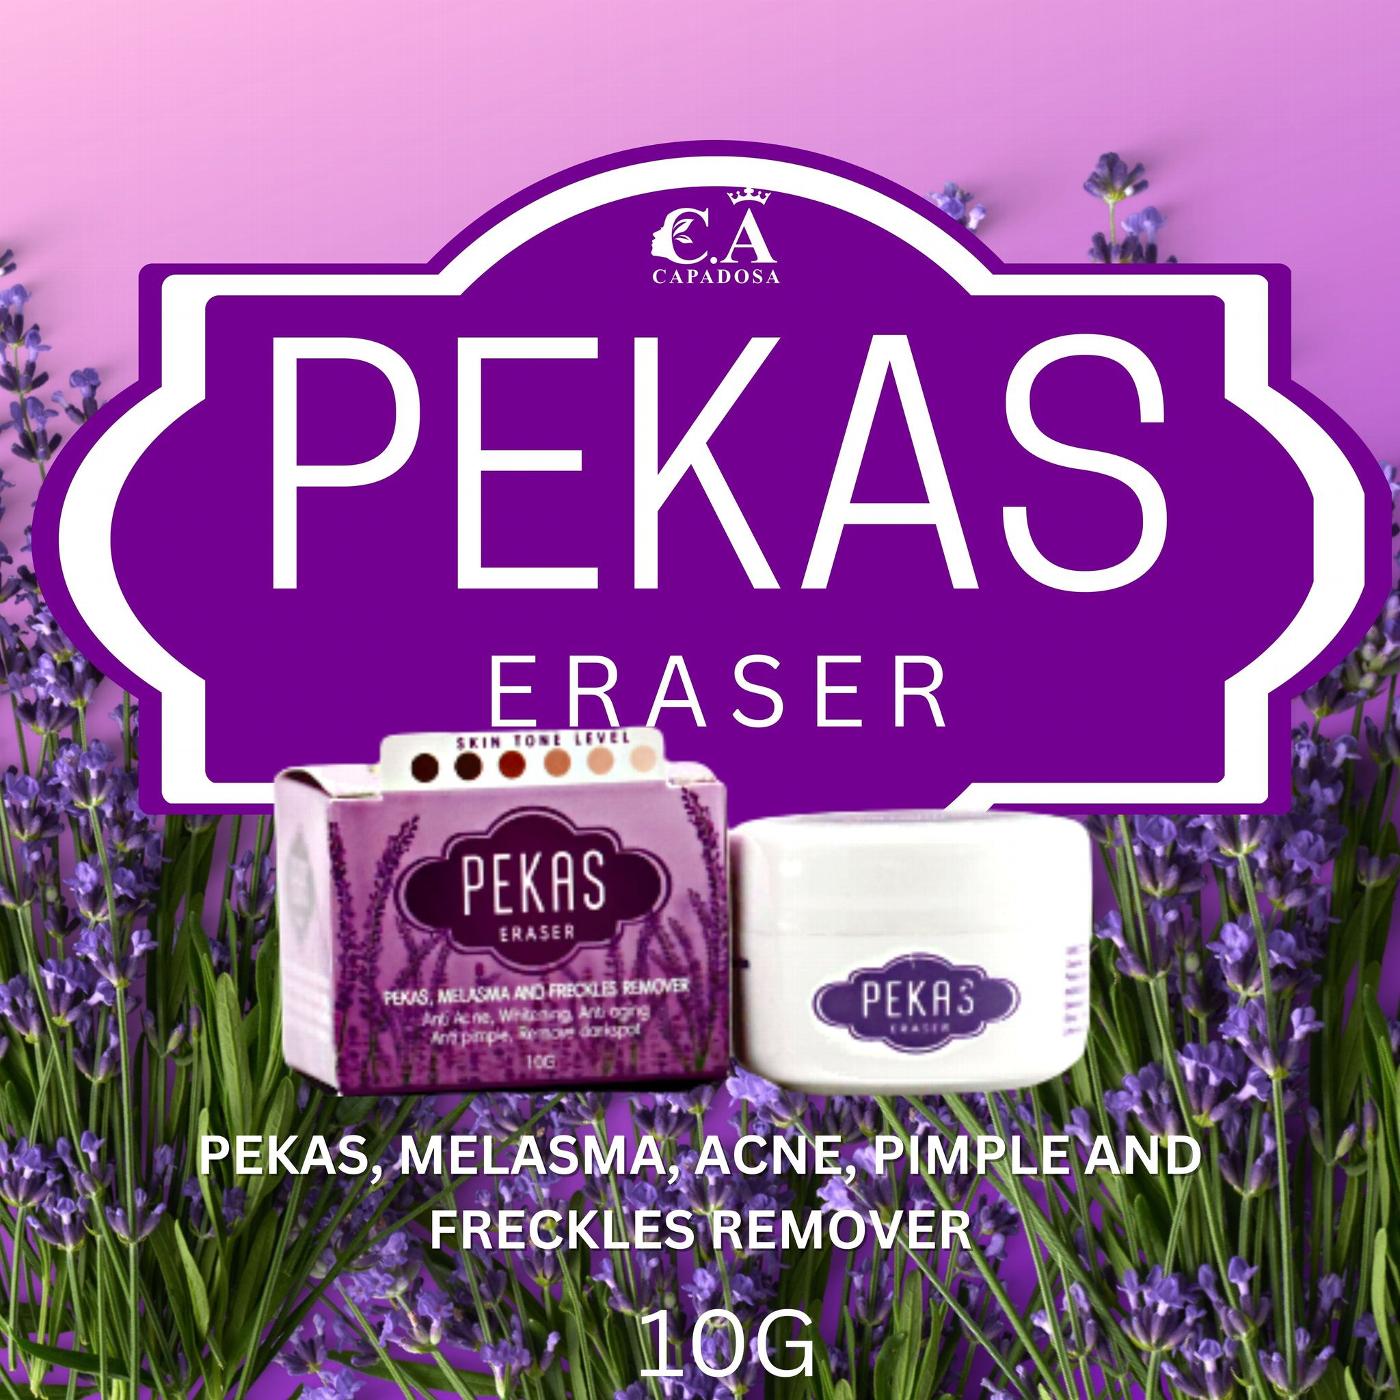 Capadosa Pekas Eraser 10g Original